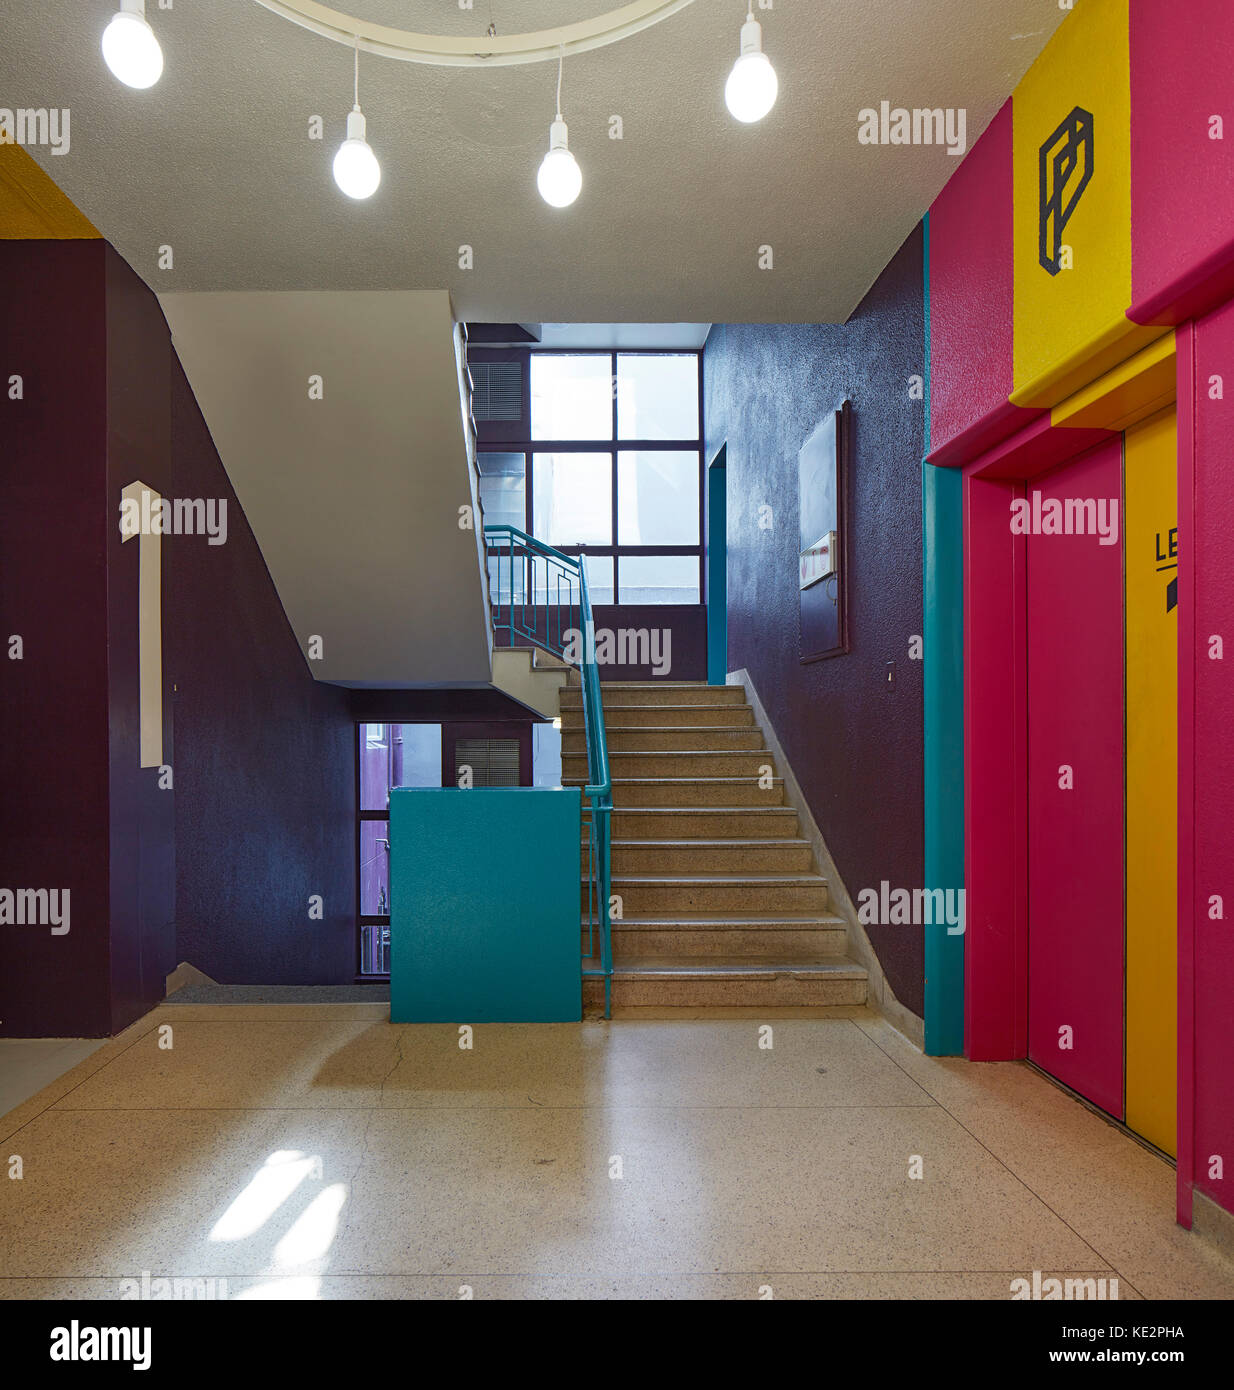 Primer piso con escalera y ascensor. Pioneer Place, Durban, Sudáfrica. Arquitecto: designworkshop : sa, 2016. Foto de stock